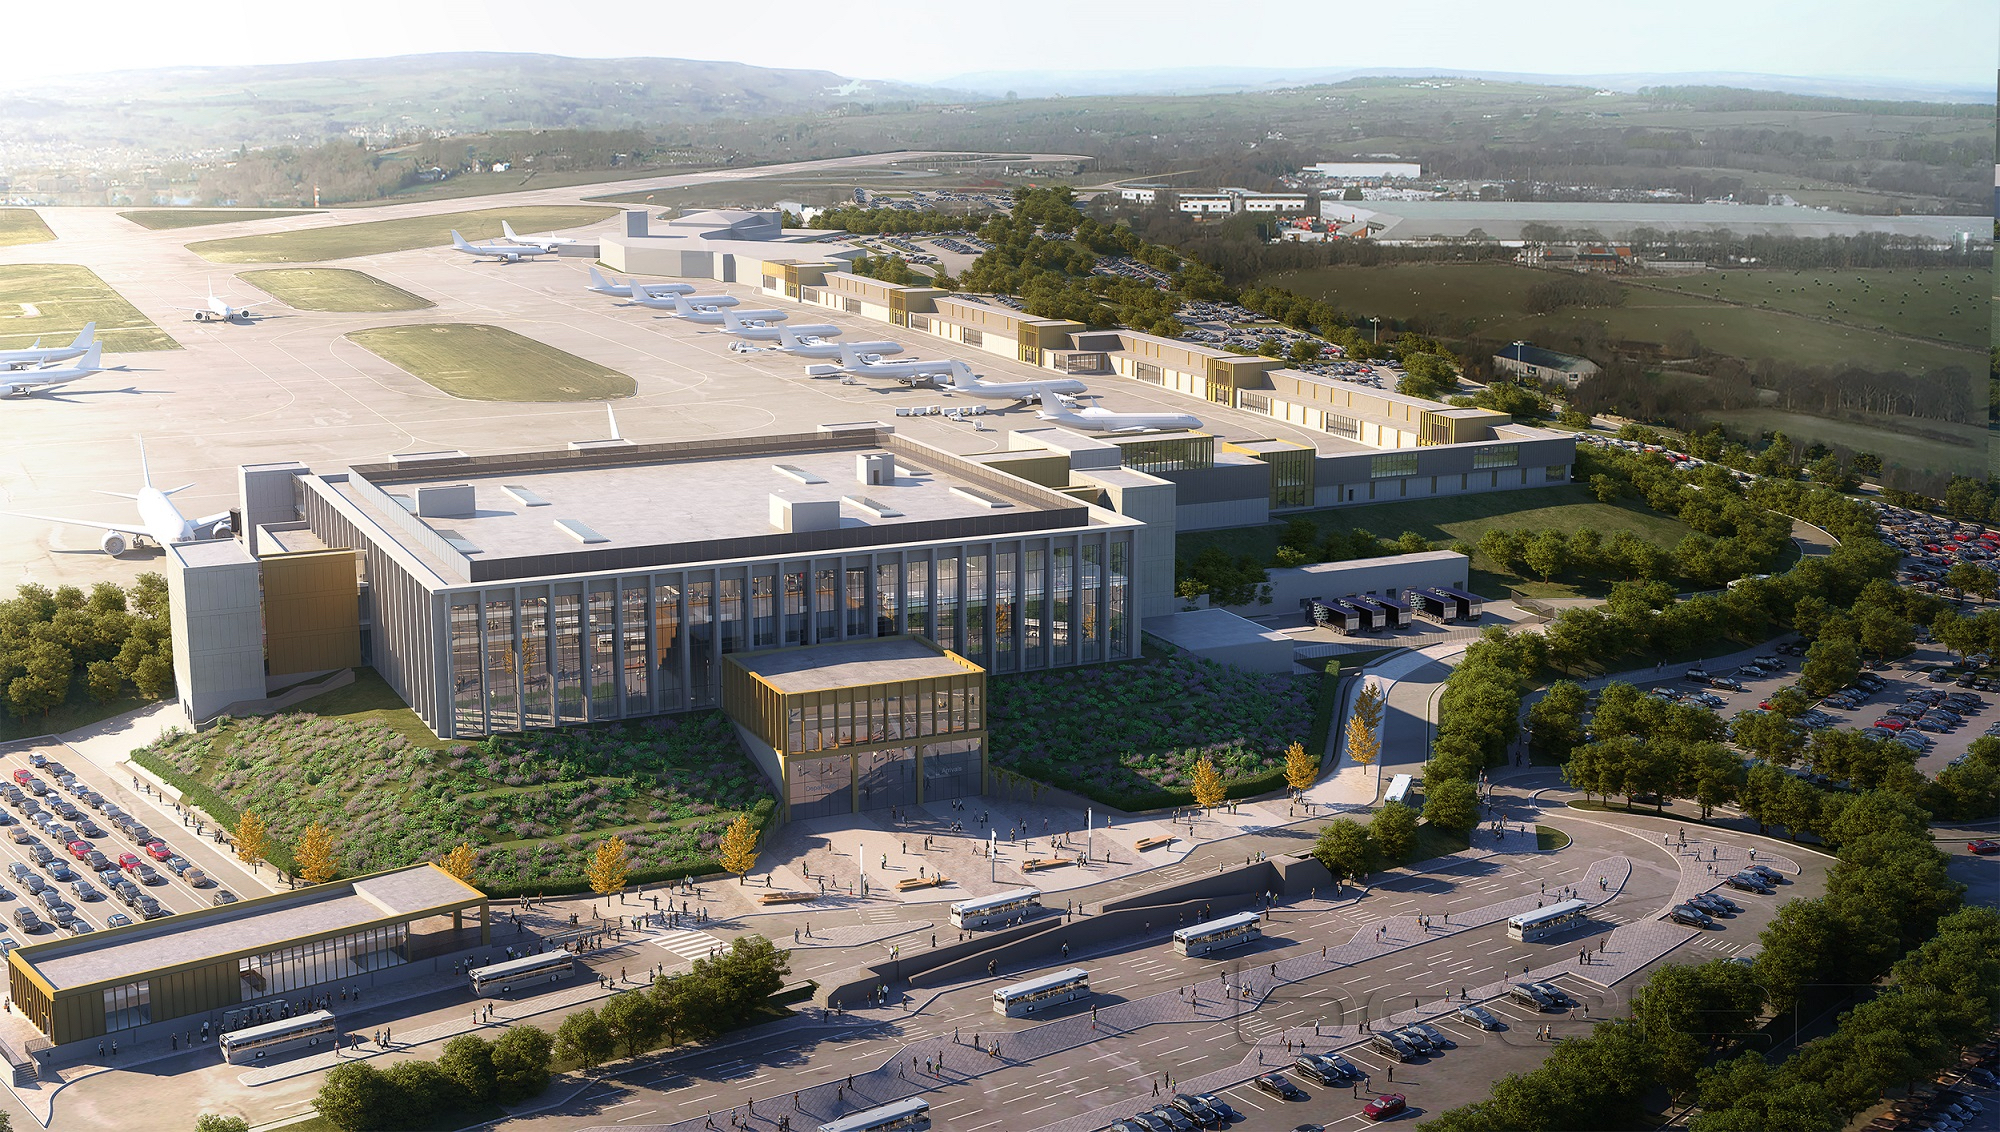 Leeds Bradford Airport Expansion Plan 